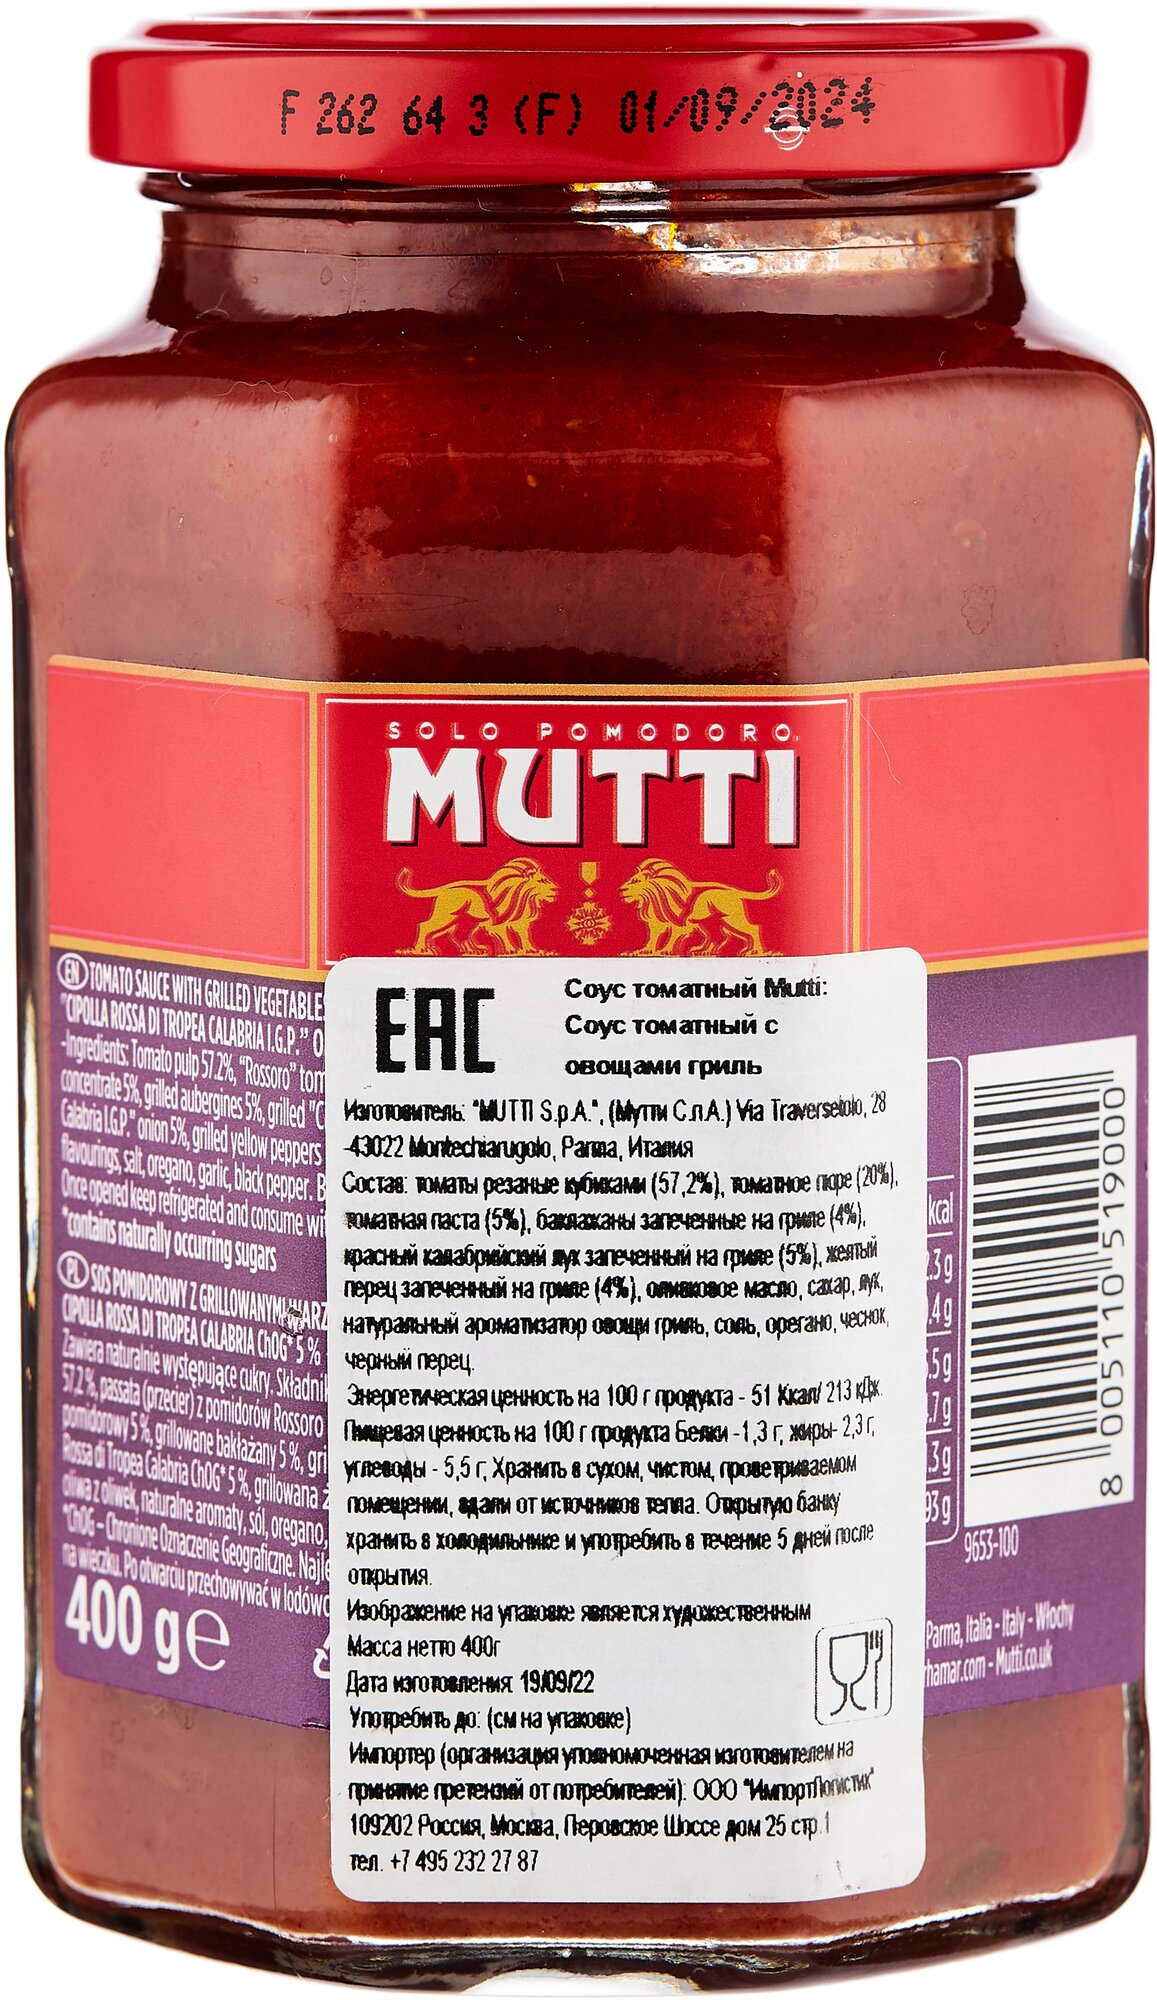 mutti томатный соус для пиццы ароматизированный фото 115